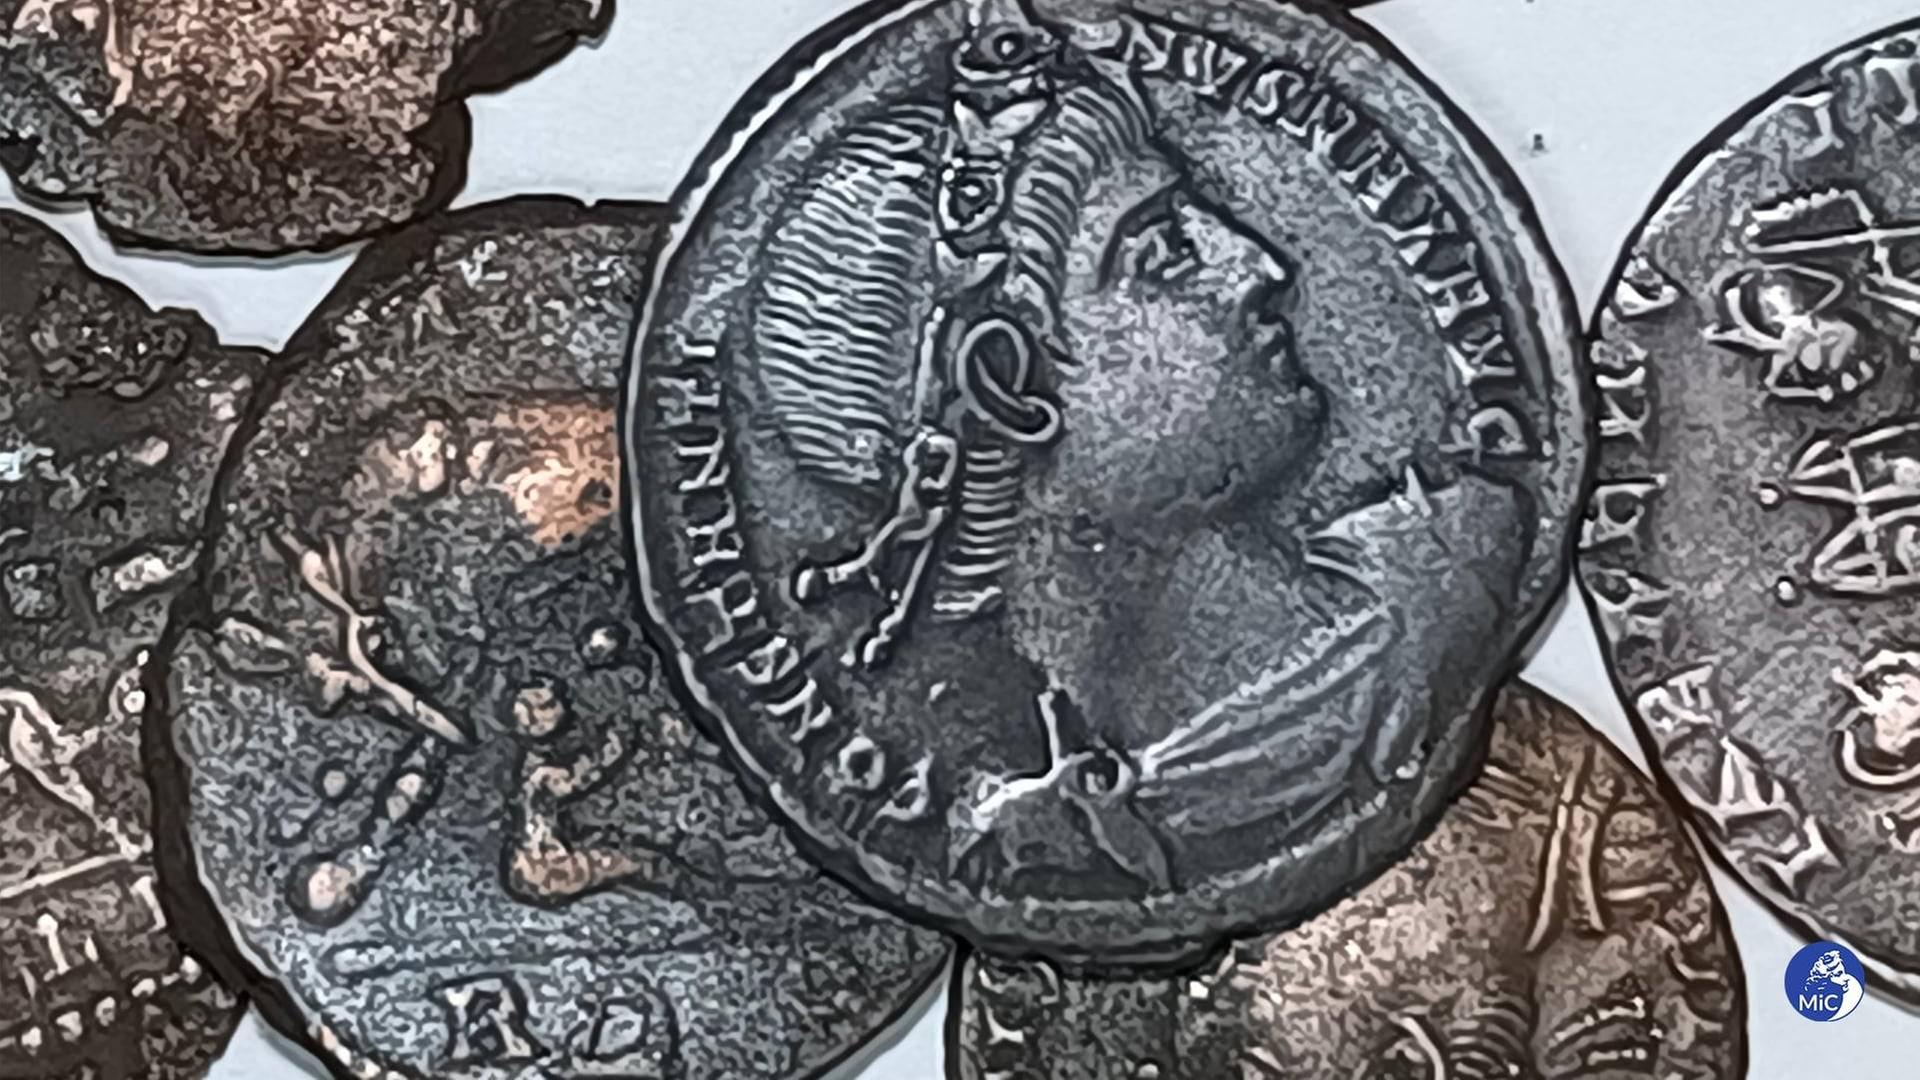 Mehrere silberne Münzen liegen nebeneinander. Man sieht die Schrift-Prägung und die Abbildung eines Kopfes.